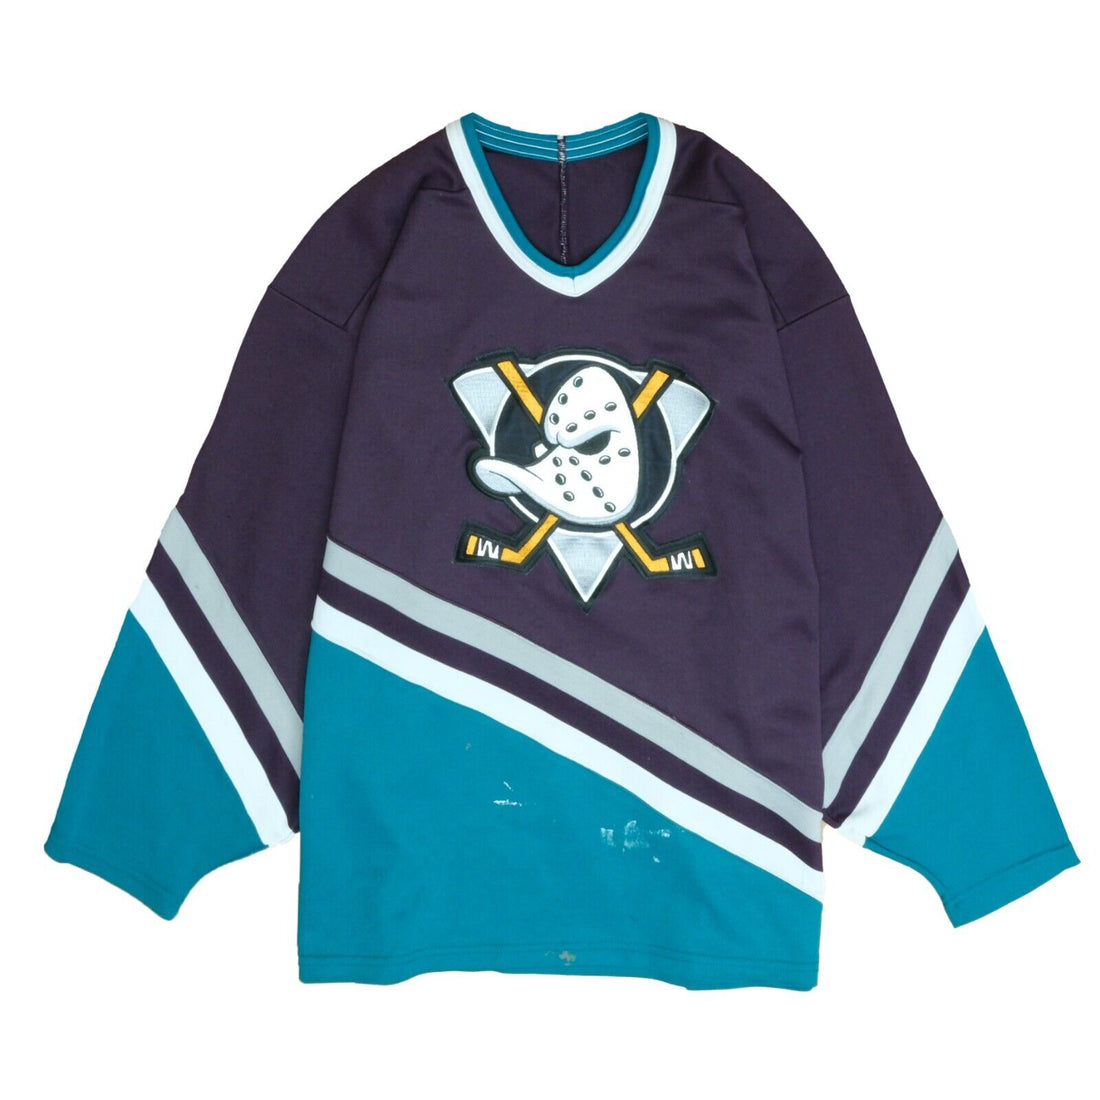 Vintage Winnipeg Jets CCM Maska Jersey Size Small 90s NHL 